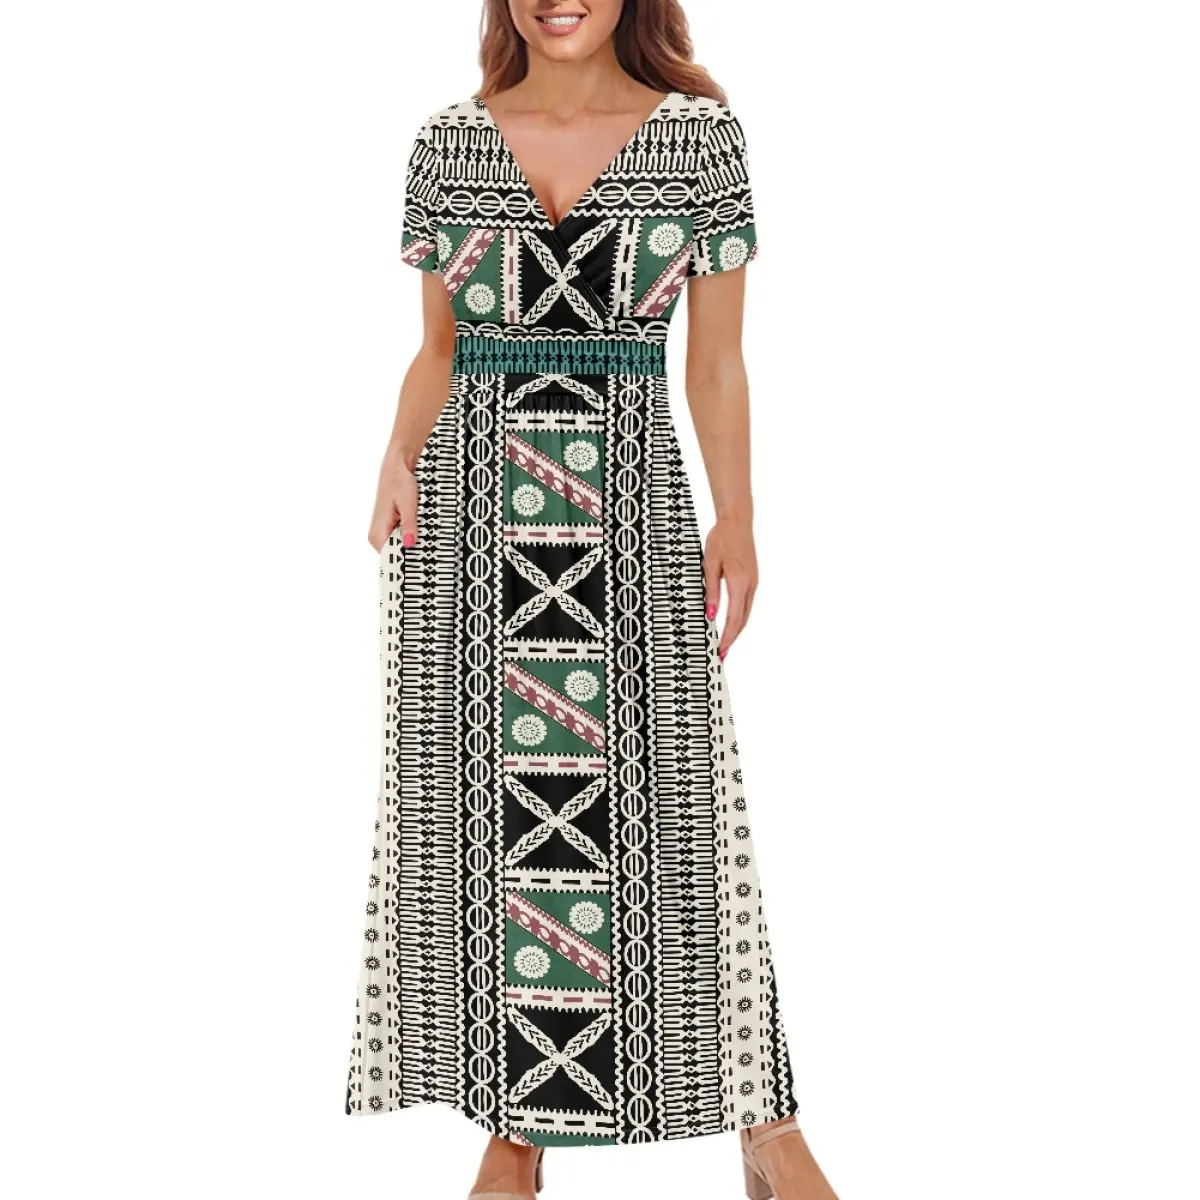 Polynesian 부족 인쇄 원피스 우아한 여성 드레스 V 넥 긴 원피스 인쇄 수요에 주문 연회 파티 의류